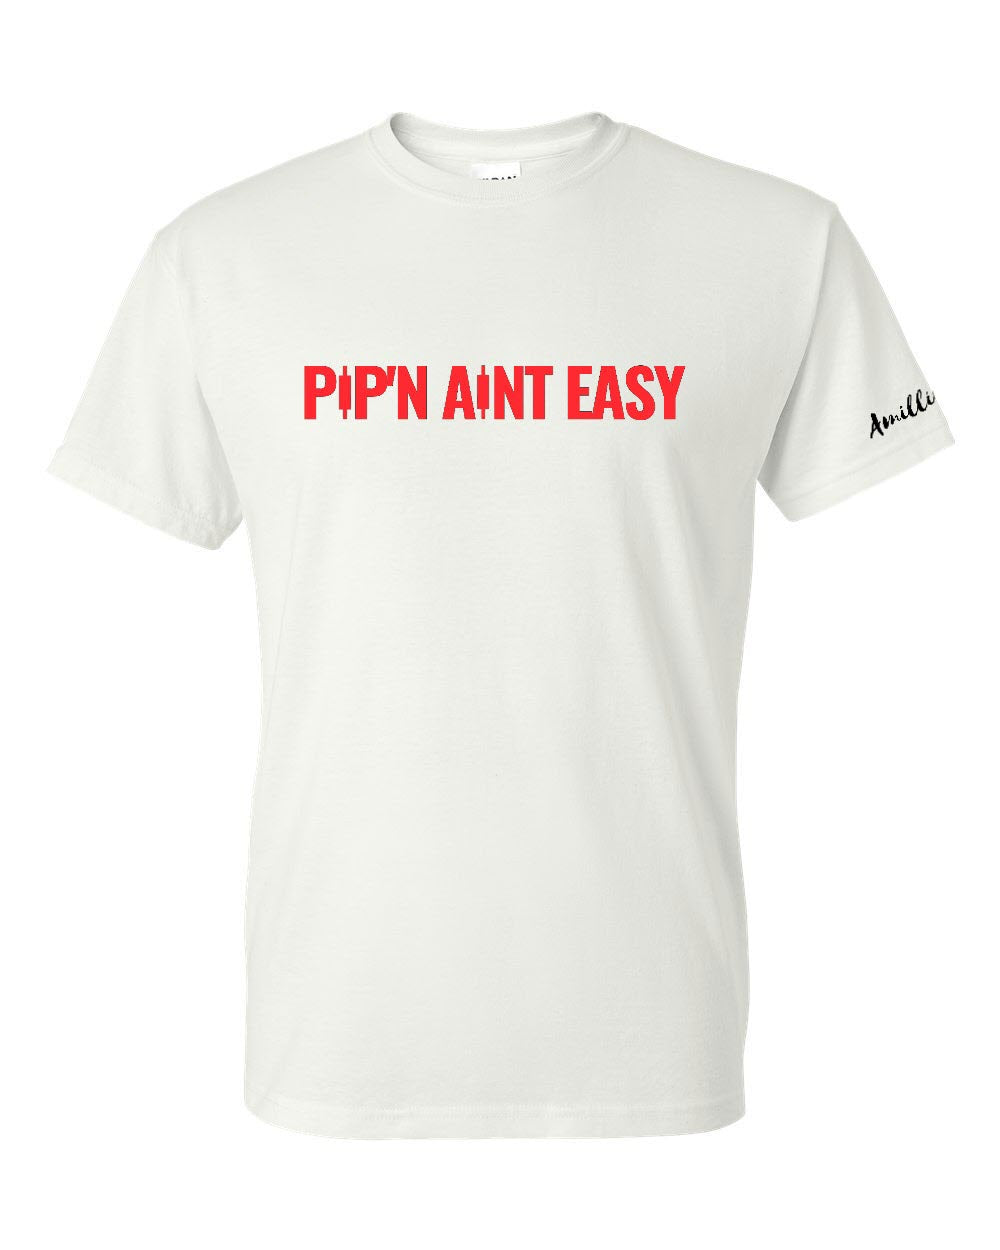 Pip'n Aint Easy - 2X/3X/4X/5X